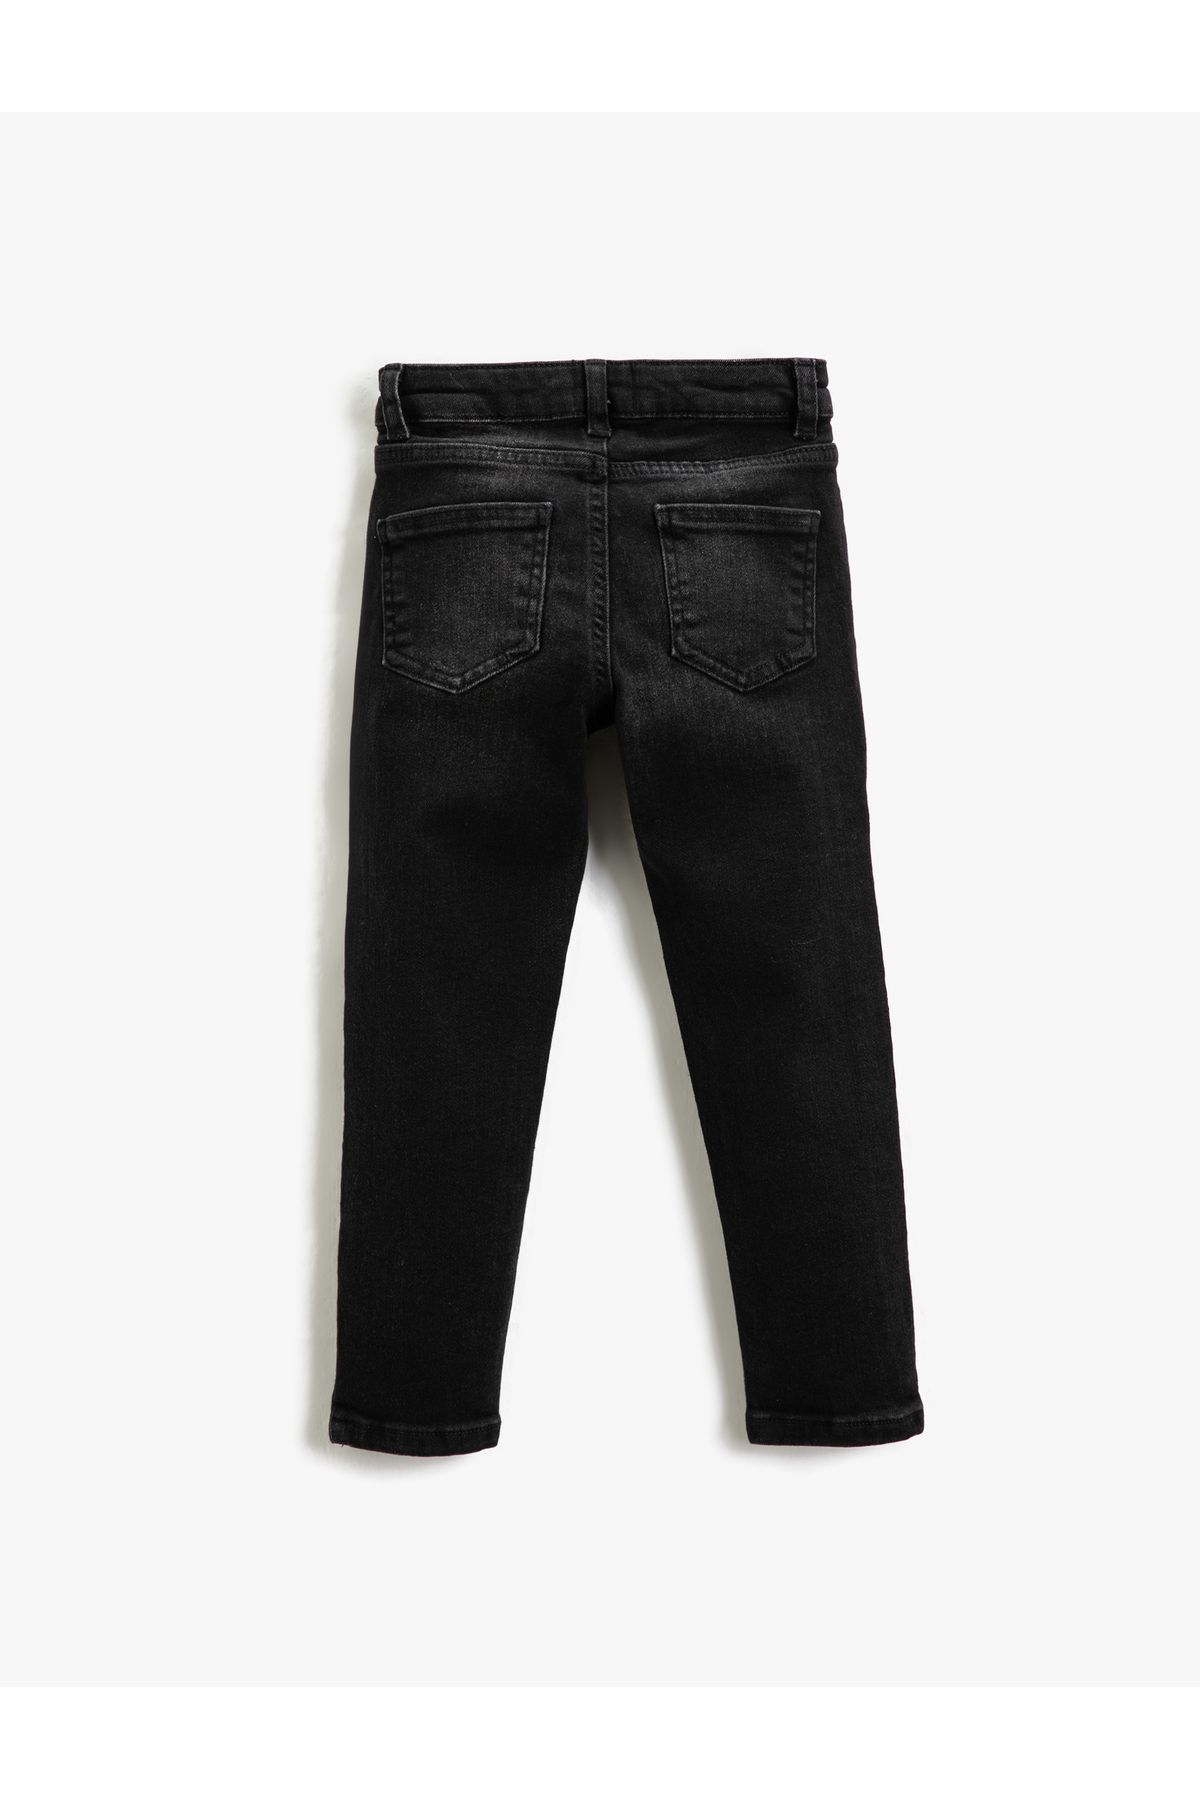 Koton شلوار جین ساق صاف کمر معمولی - با الاستیک قابل تنظیم